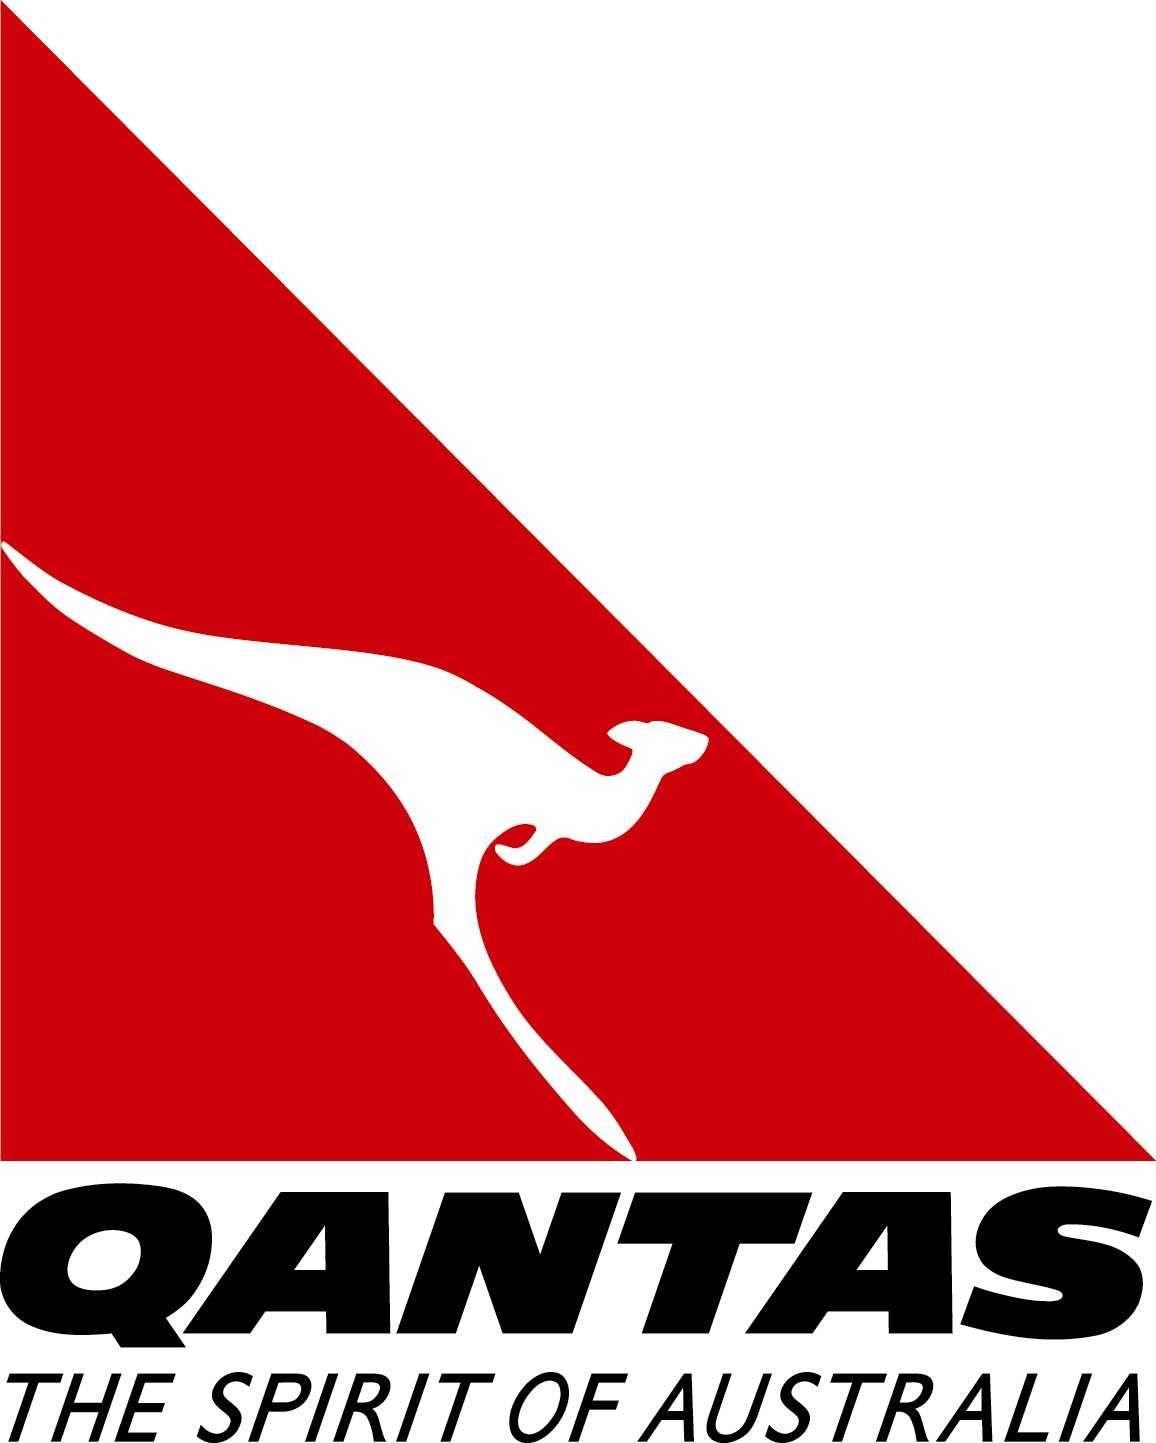 Qantas Logo - Image - Qantas-logo.jpg | Logopedia | FANDOM powered by Wikia